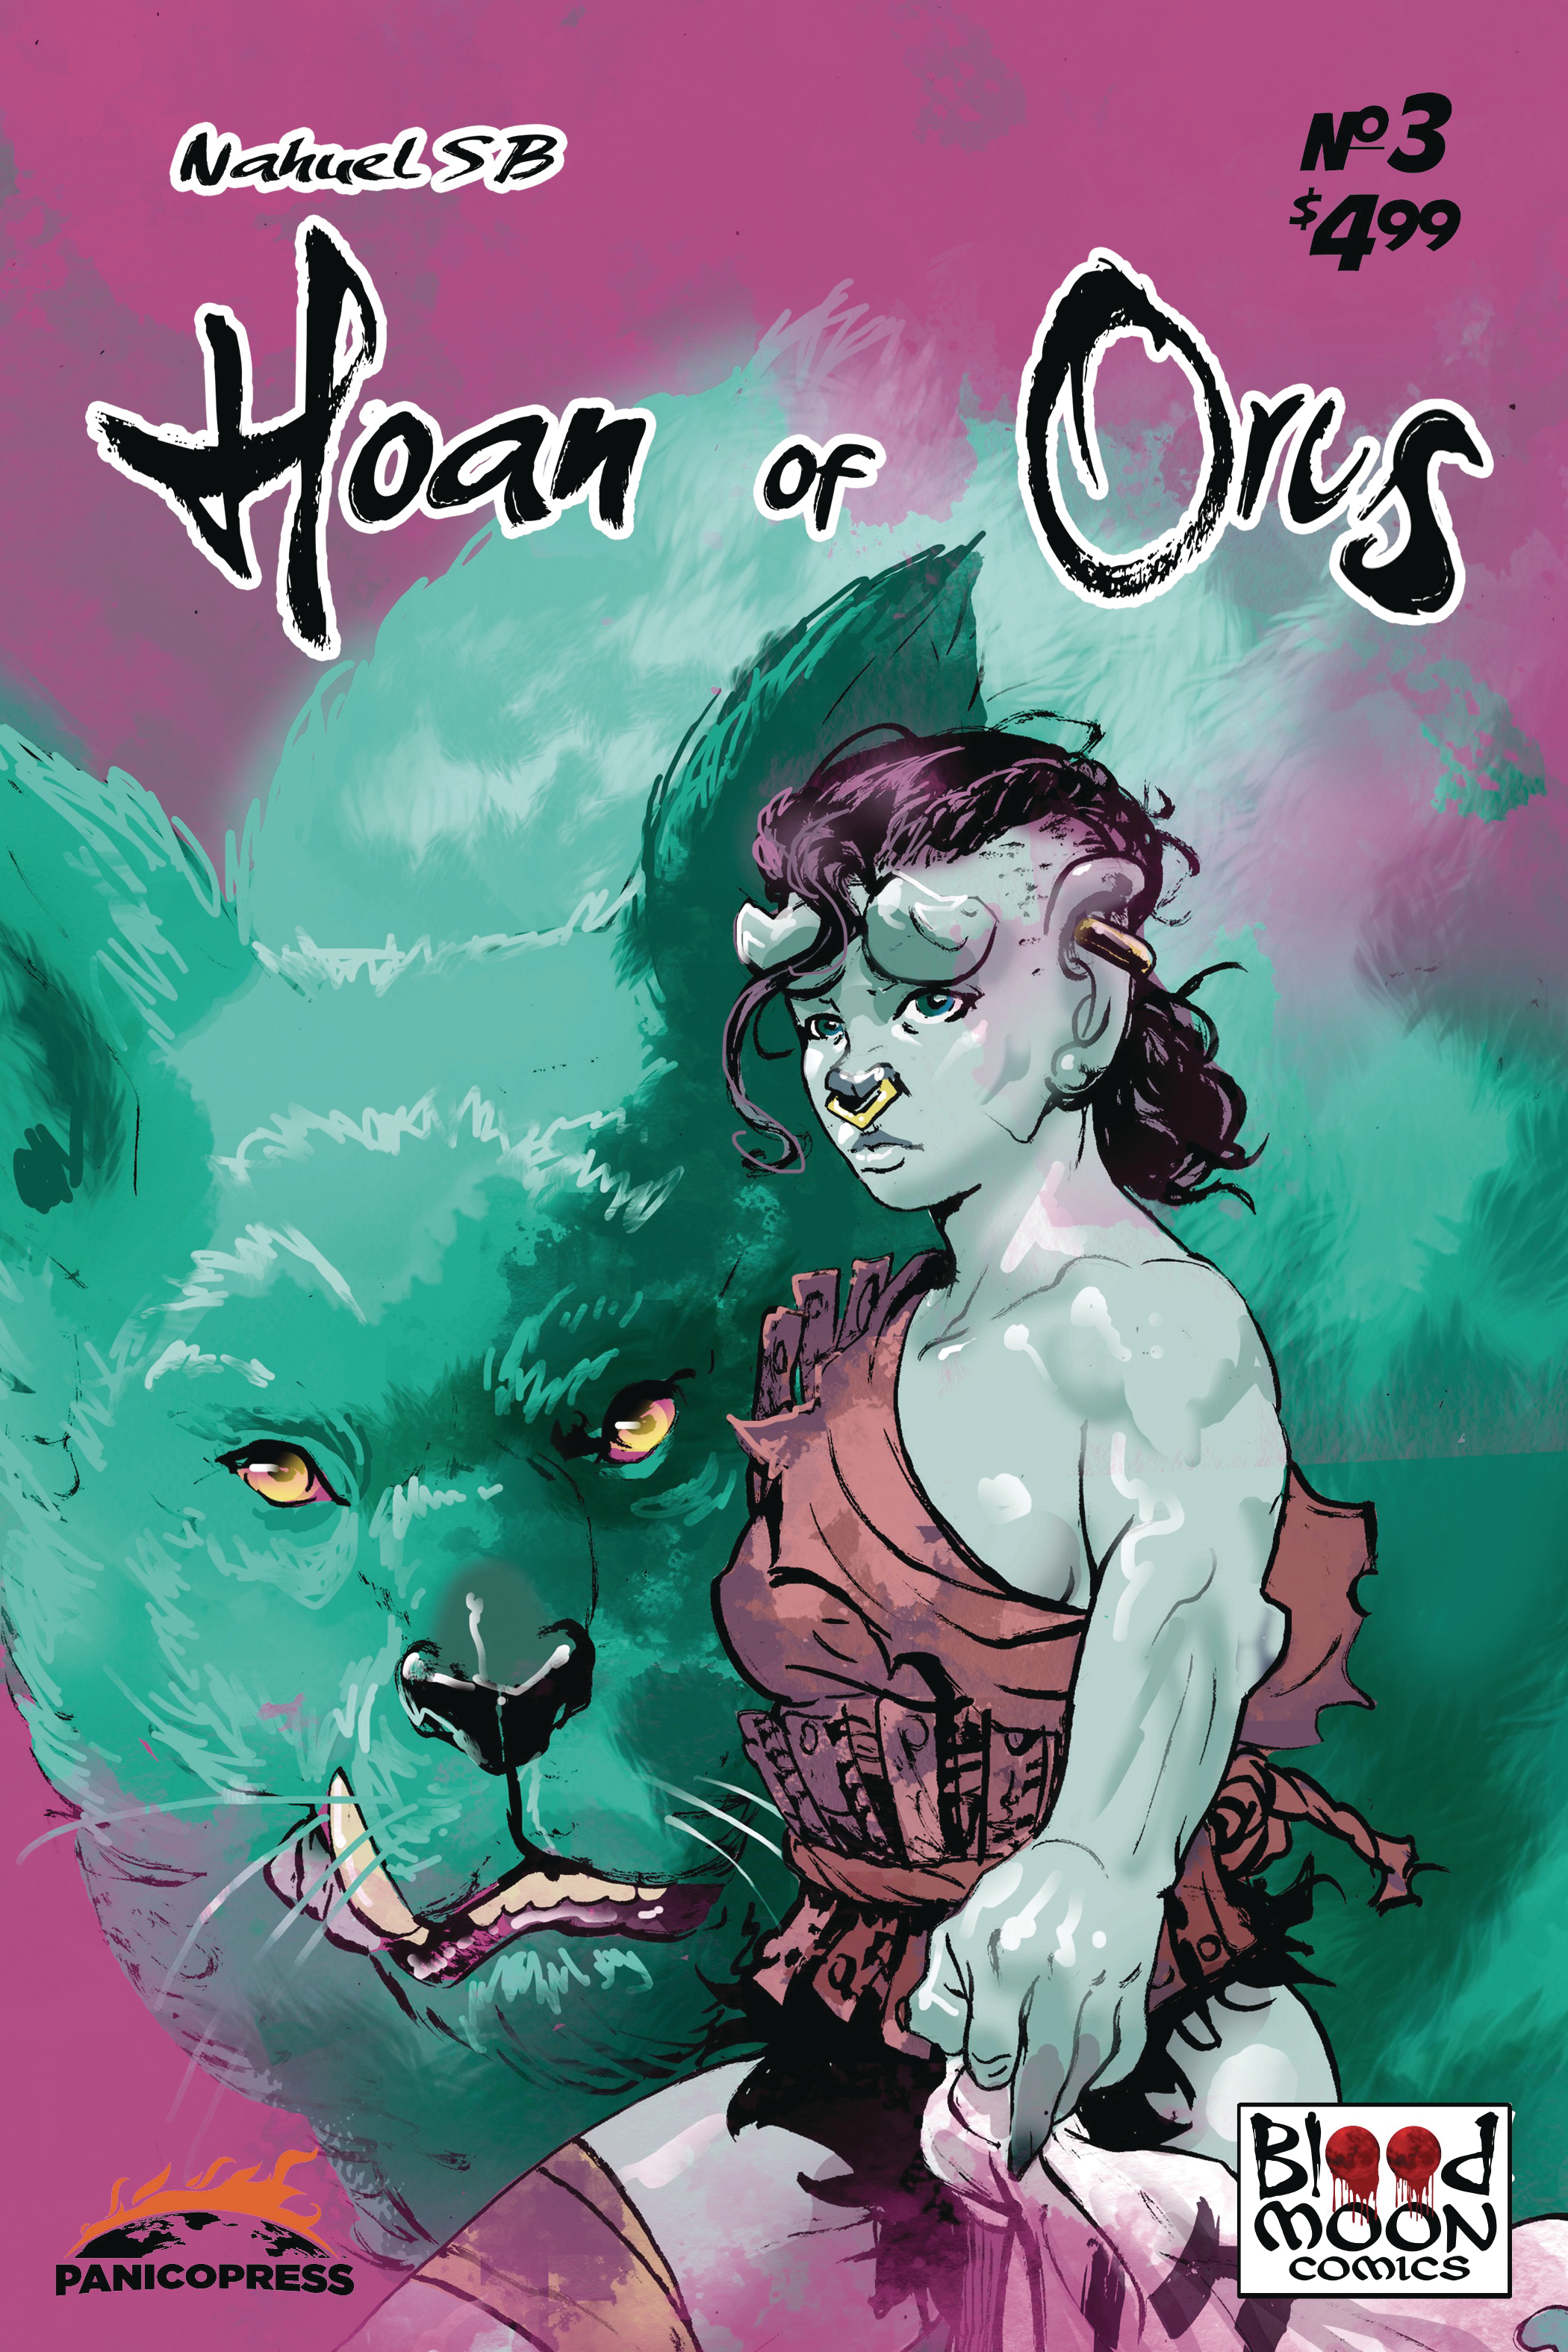 Hoan of Orcs #3 Cover A Nahuel Sb (Of 4)